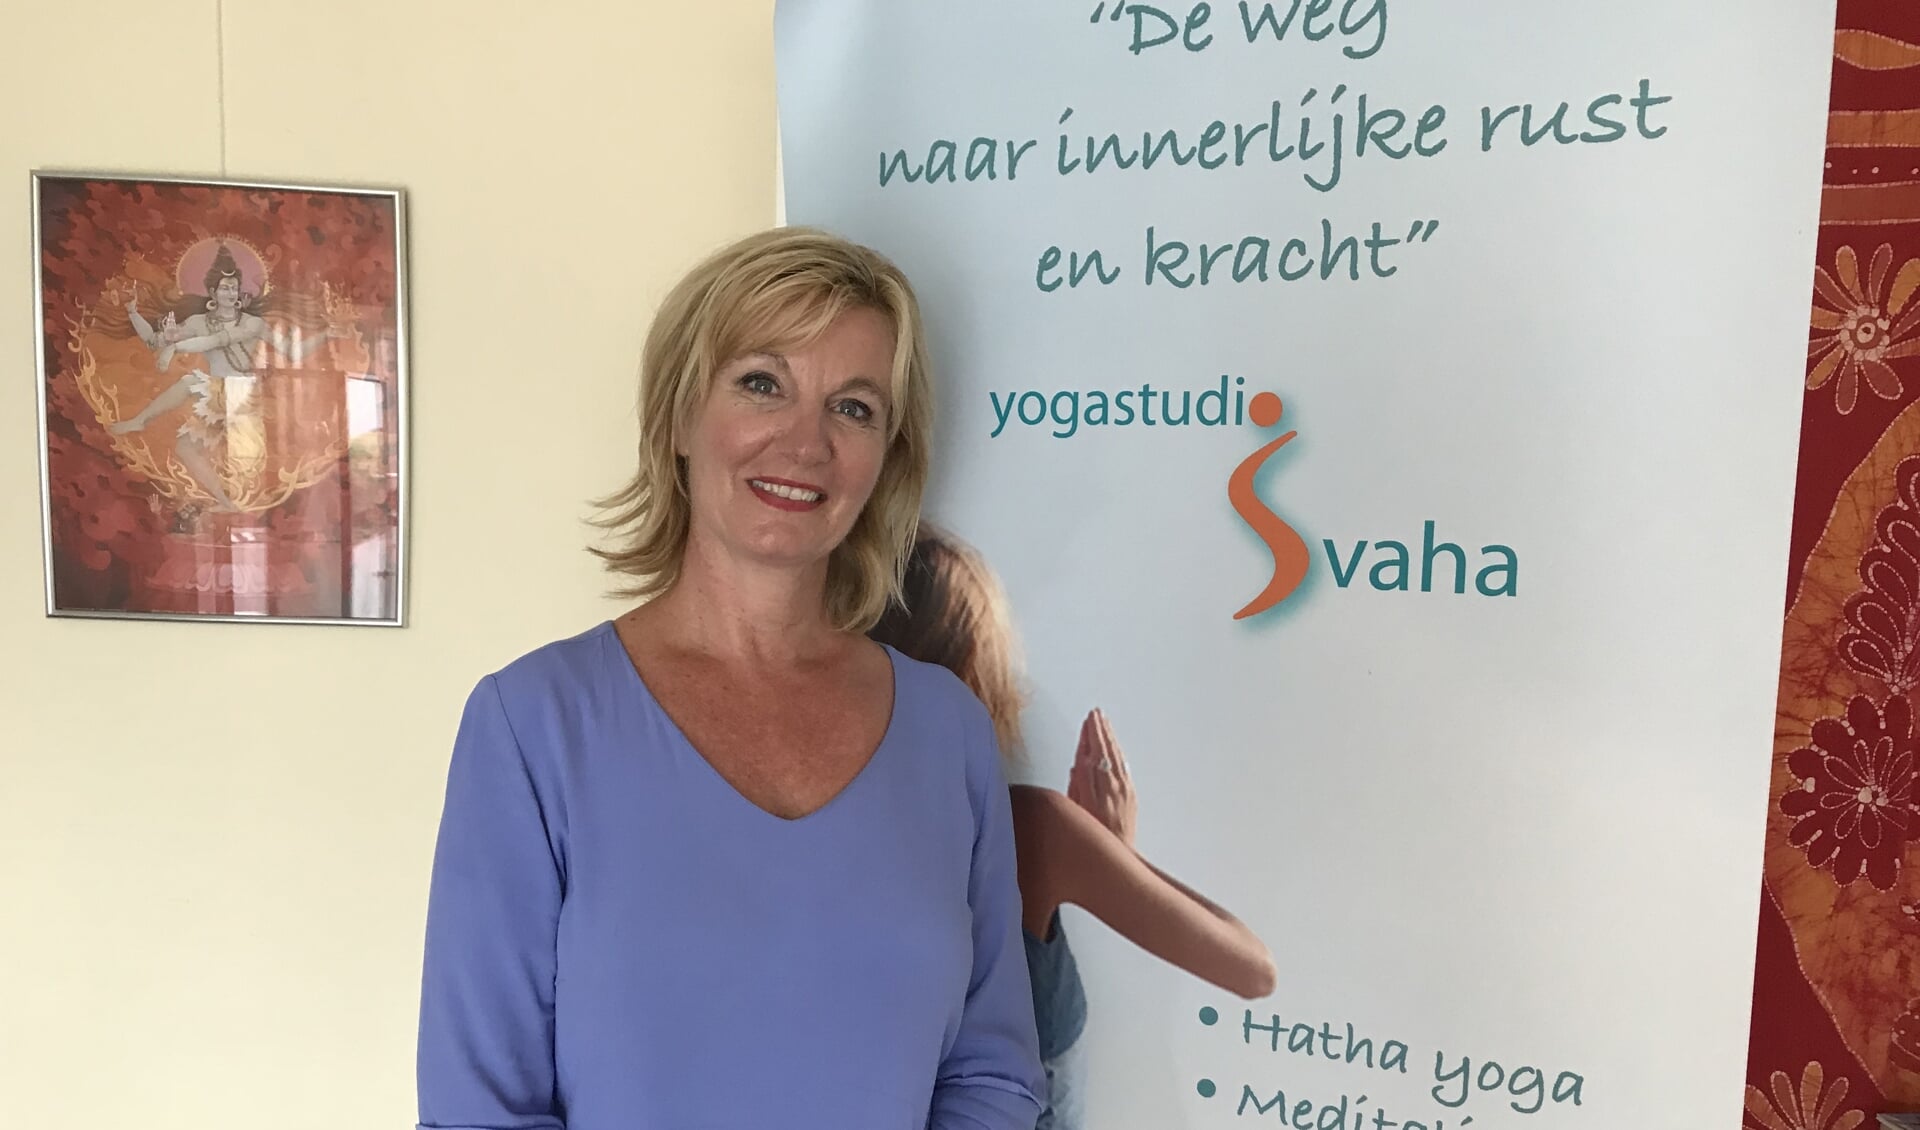 • Gerdie van Gerwen van yogastudio Svaha heeft de opleiding opgezet samen met het ayurvedisch instituut Den Haag en PDI in India.